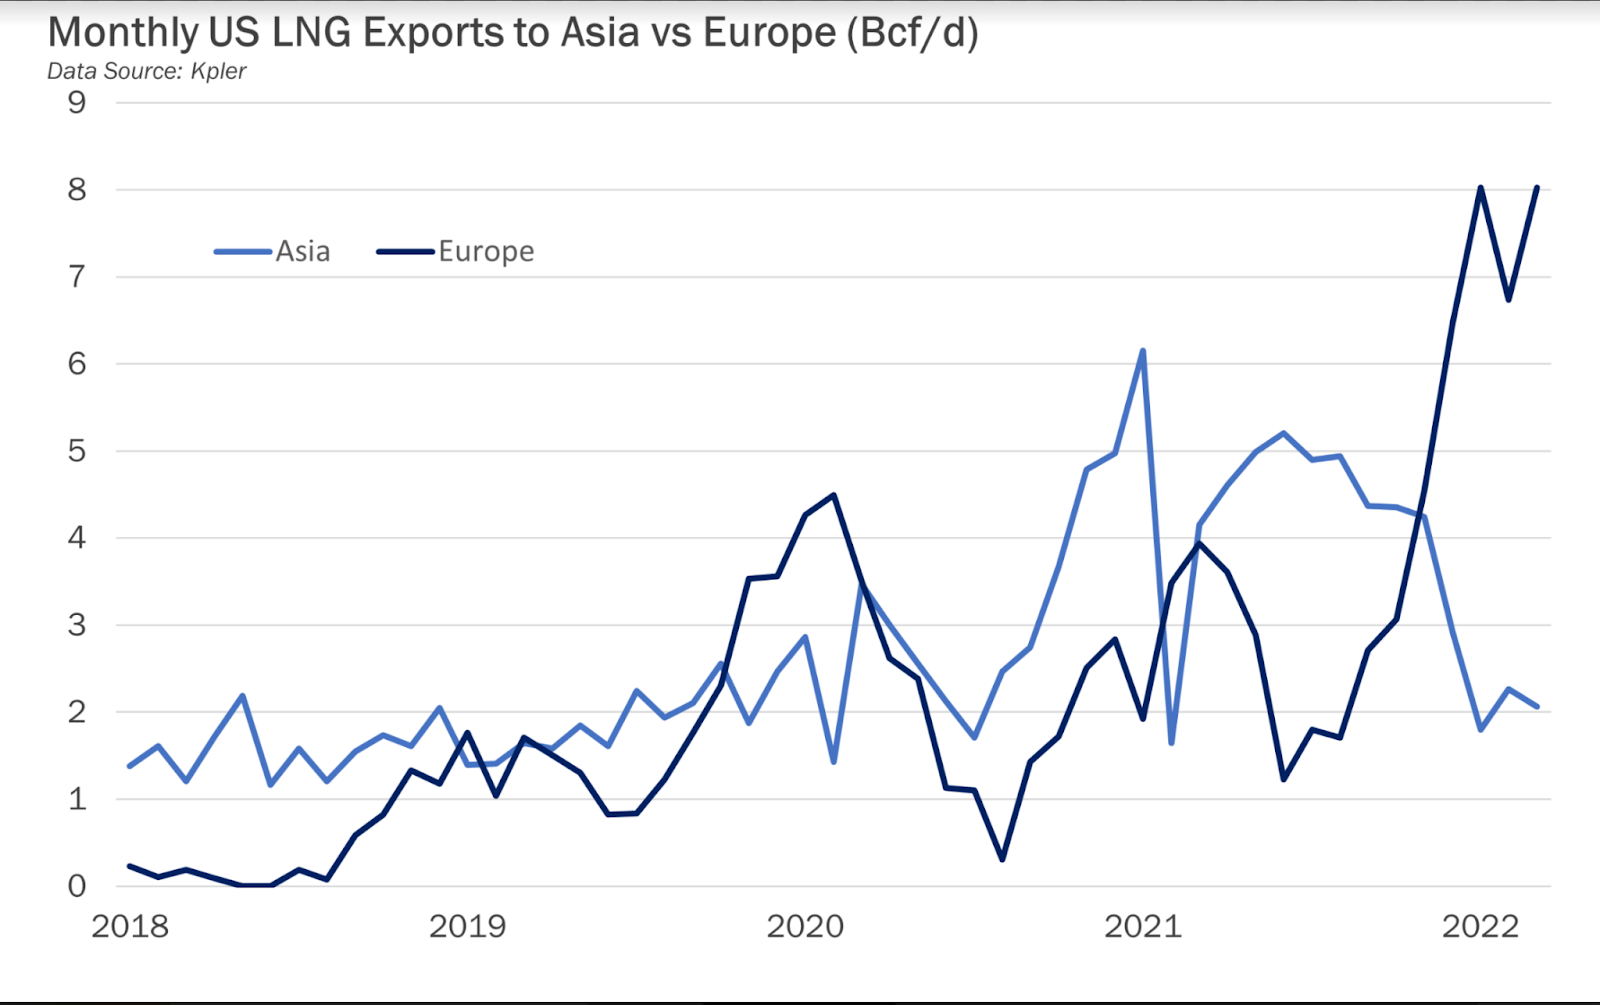 Exportation mensuelles de GNL vers l'Europe Vs Asie